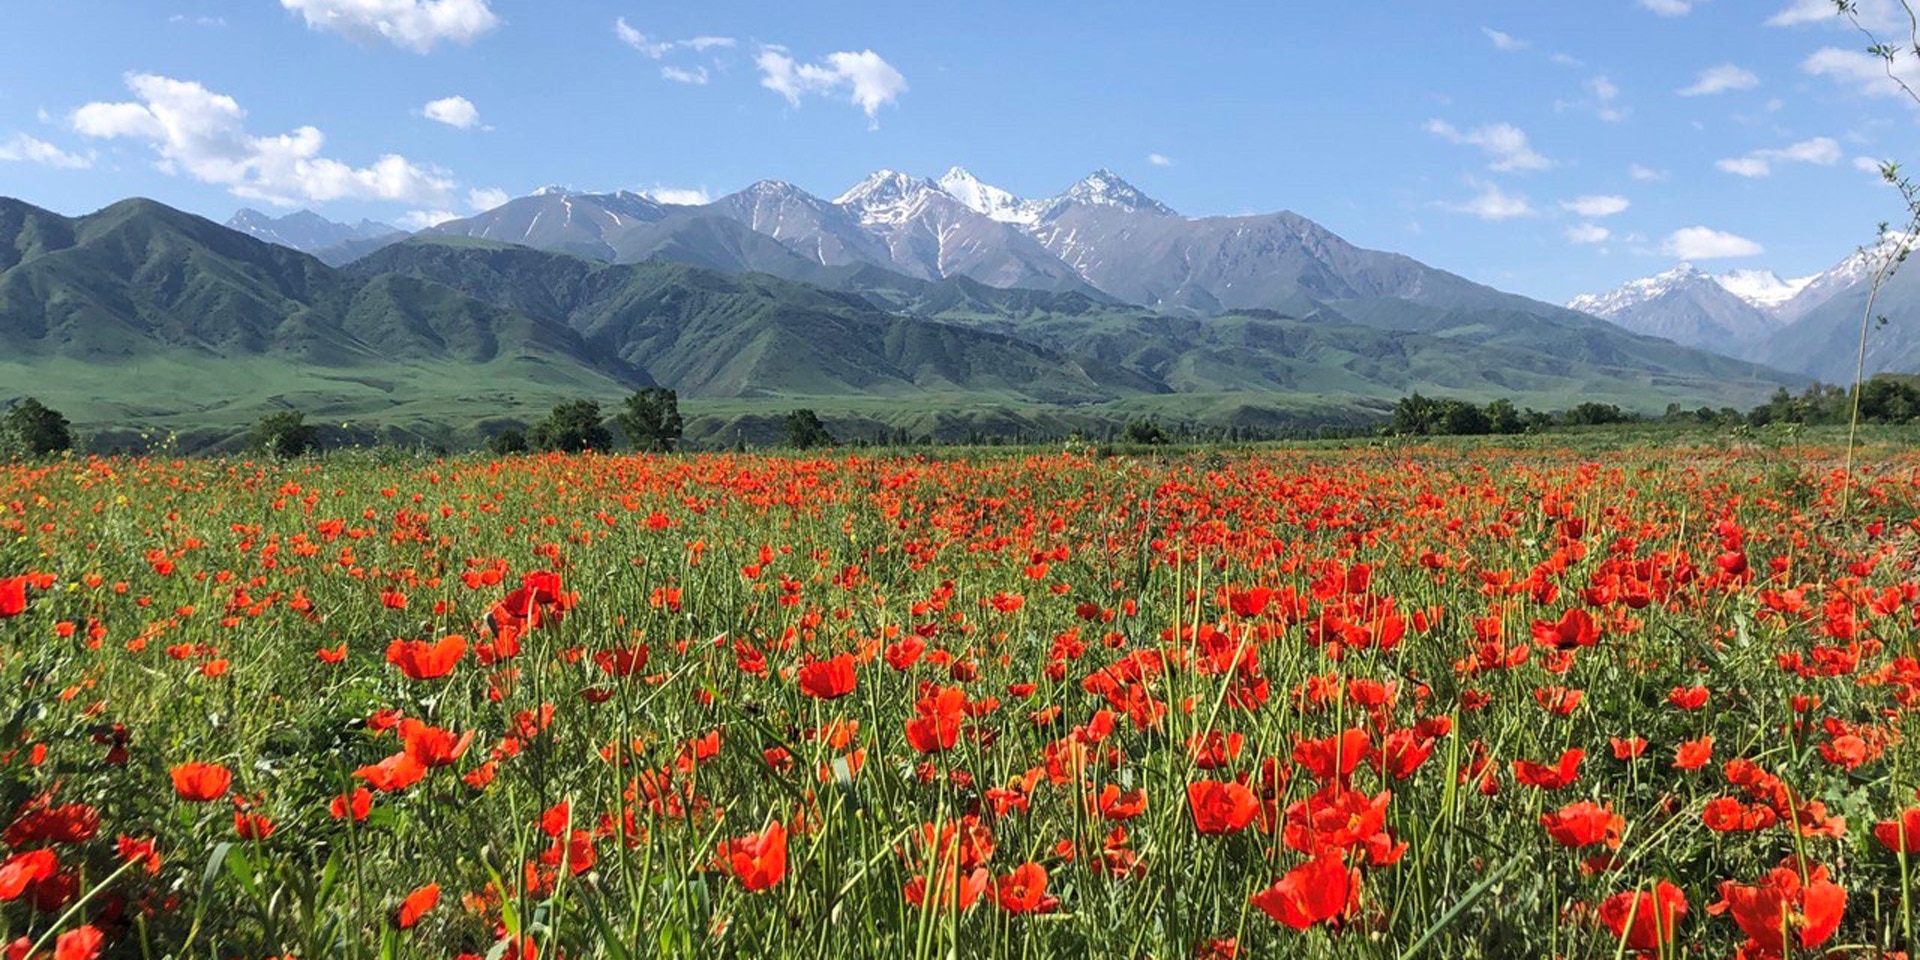 Davanti a un campo fiorito di colore rosso si stagliano delle montagne con la cima innevata.